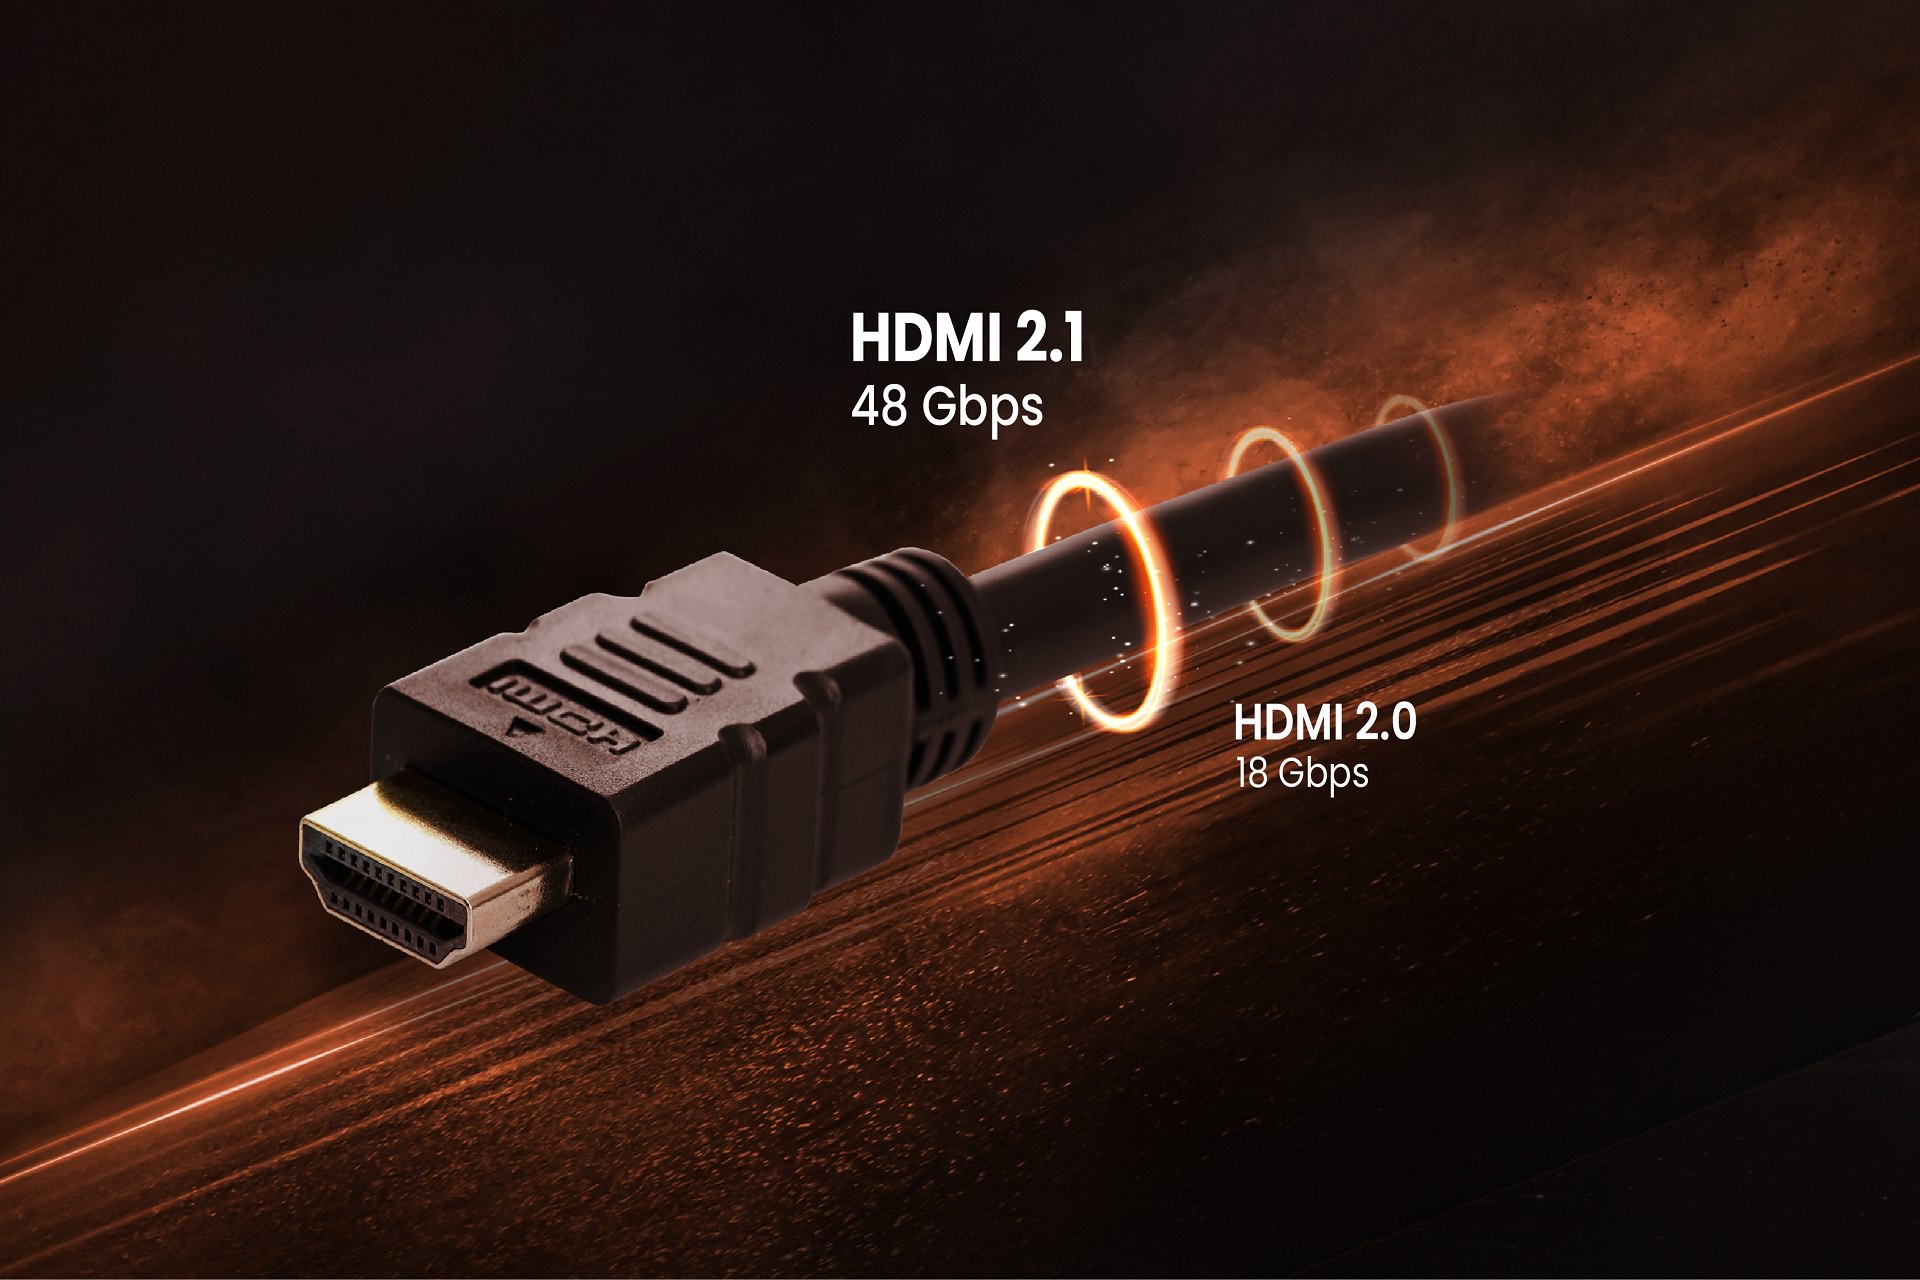  کابل HDMI با کابل USB چه تفاوتی دارد؟ 